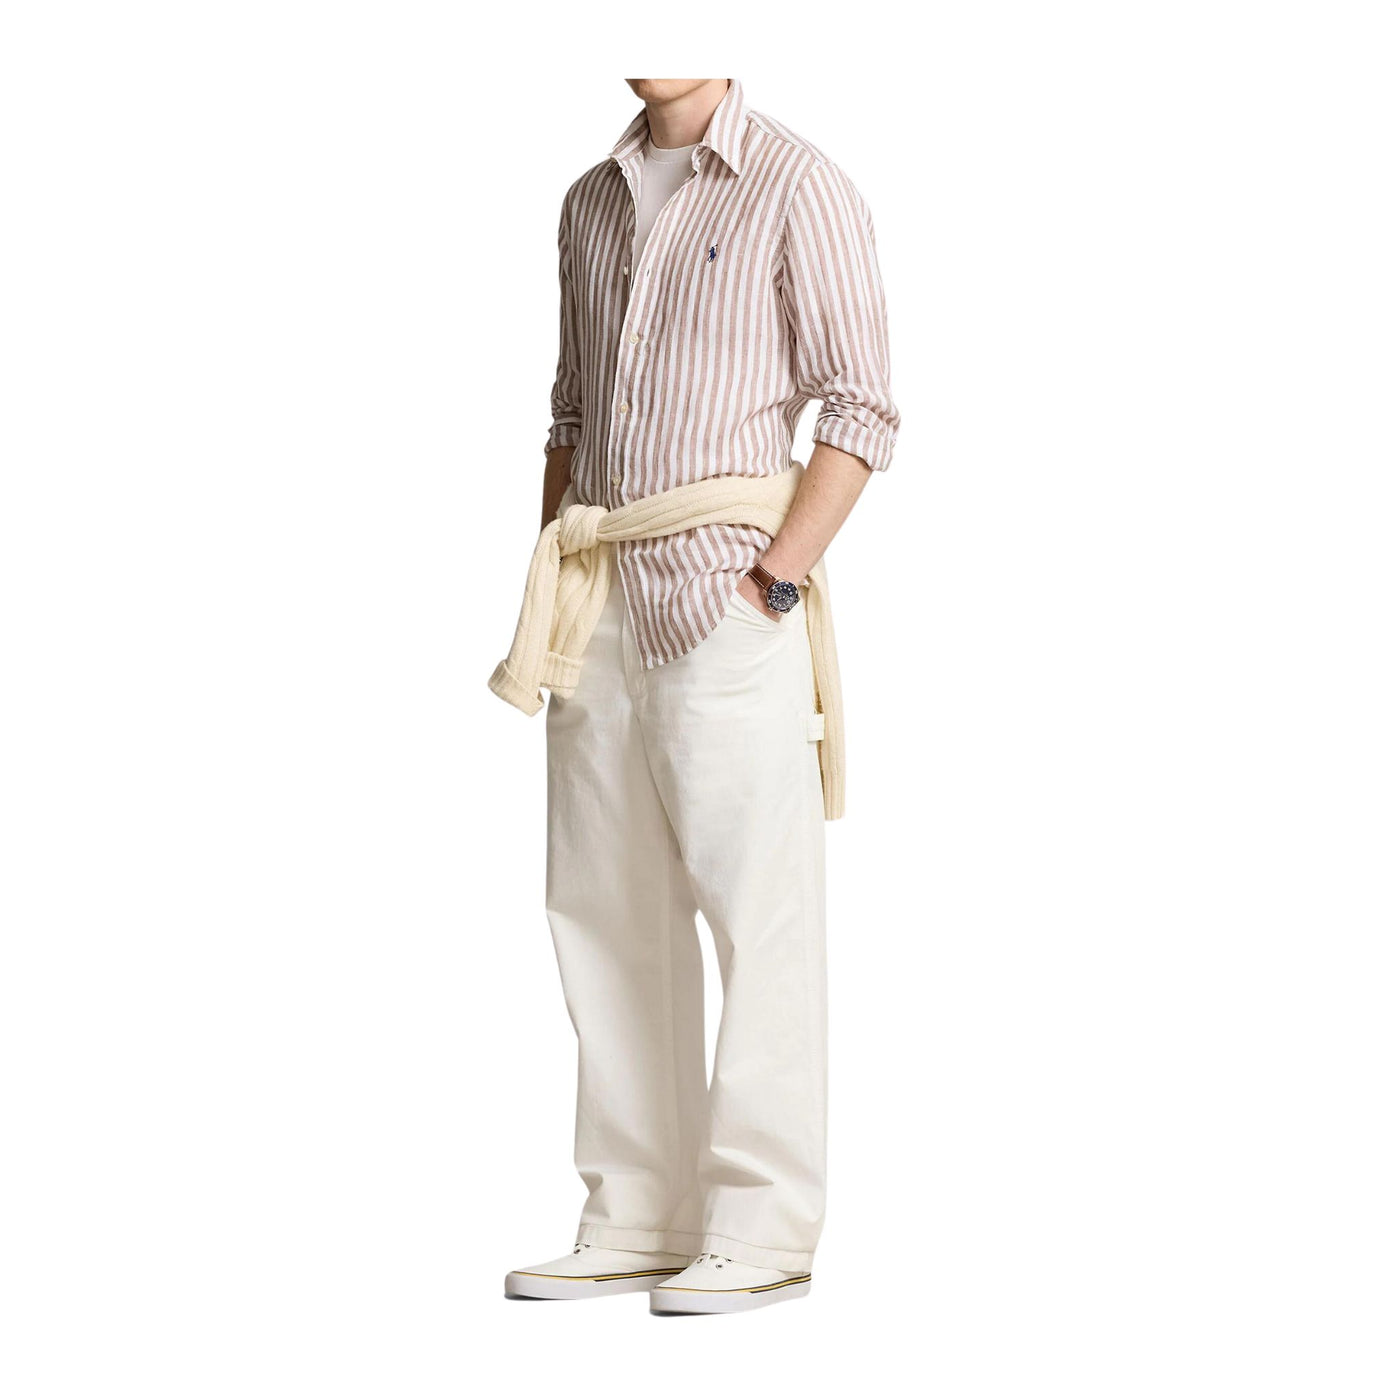 Camicia Uomo in puro lino, dalla vestibilità regular, con colletto classico 